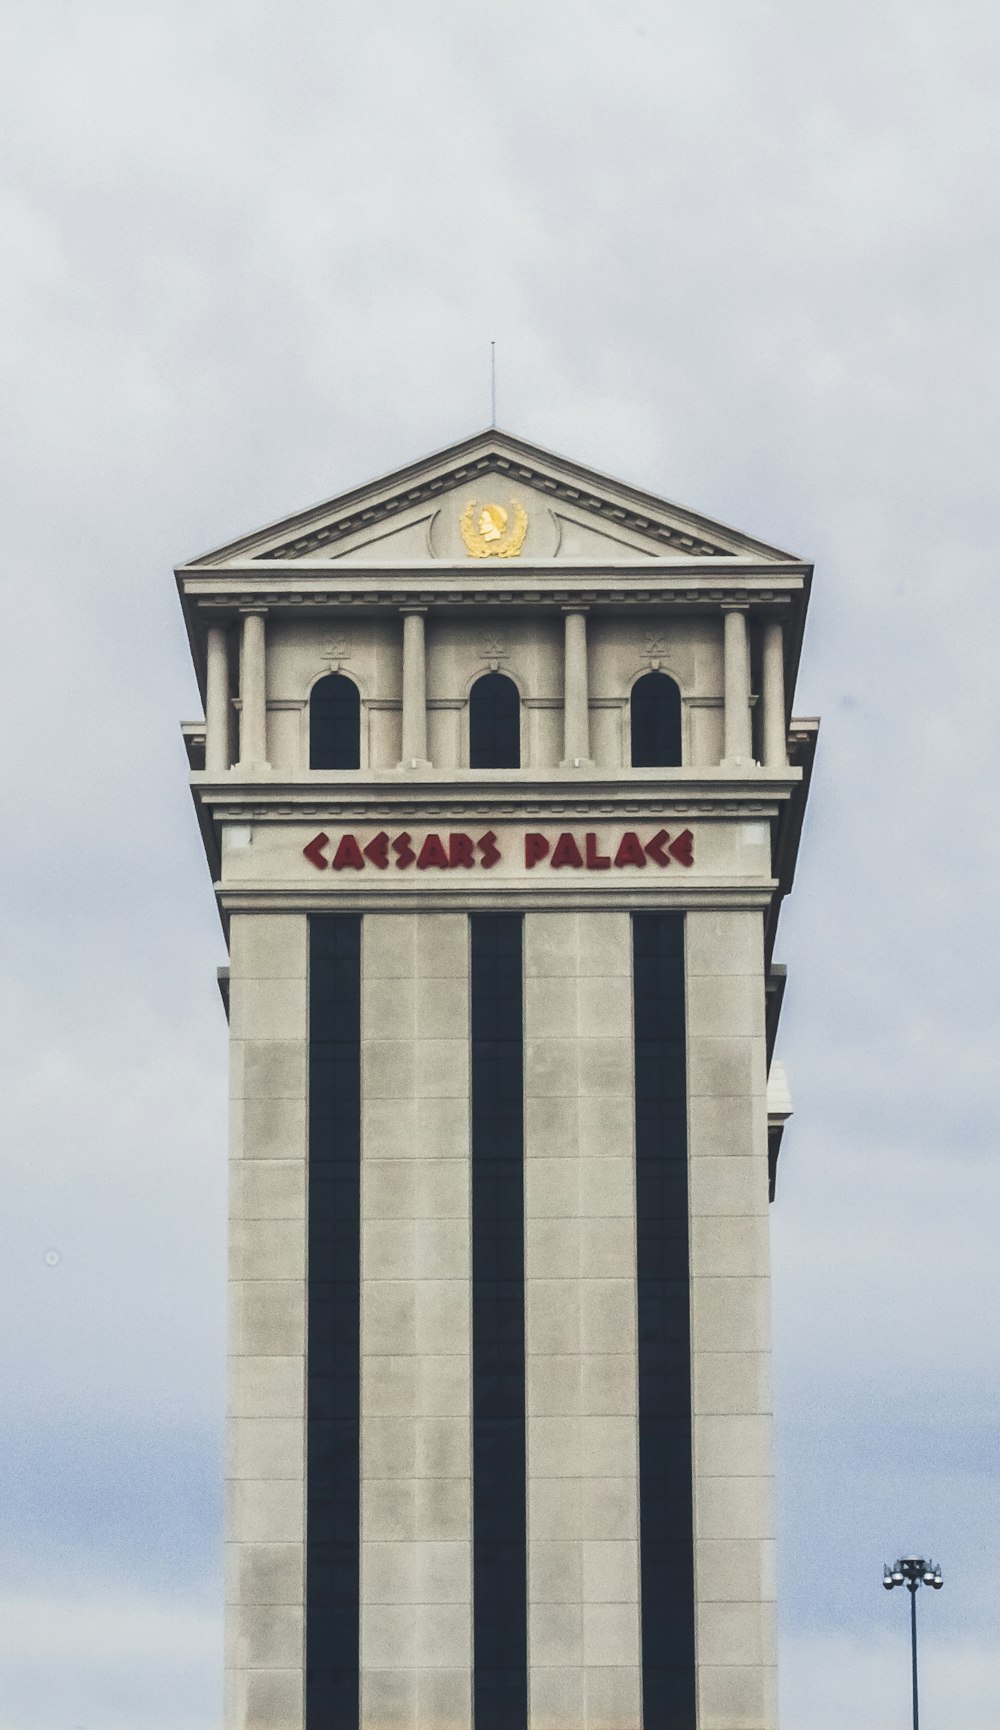 Casars Palace